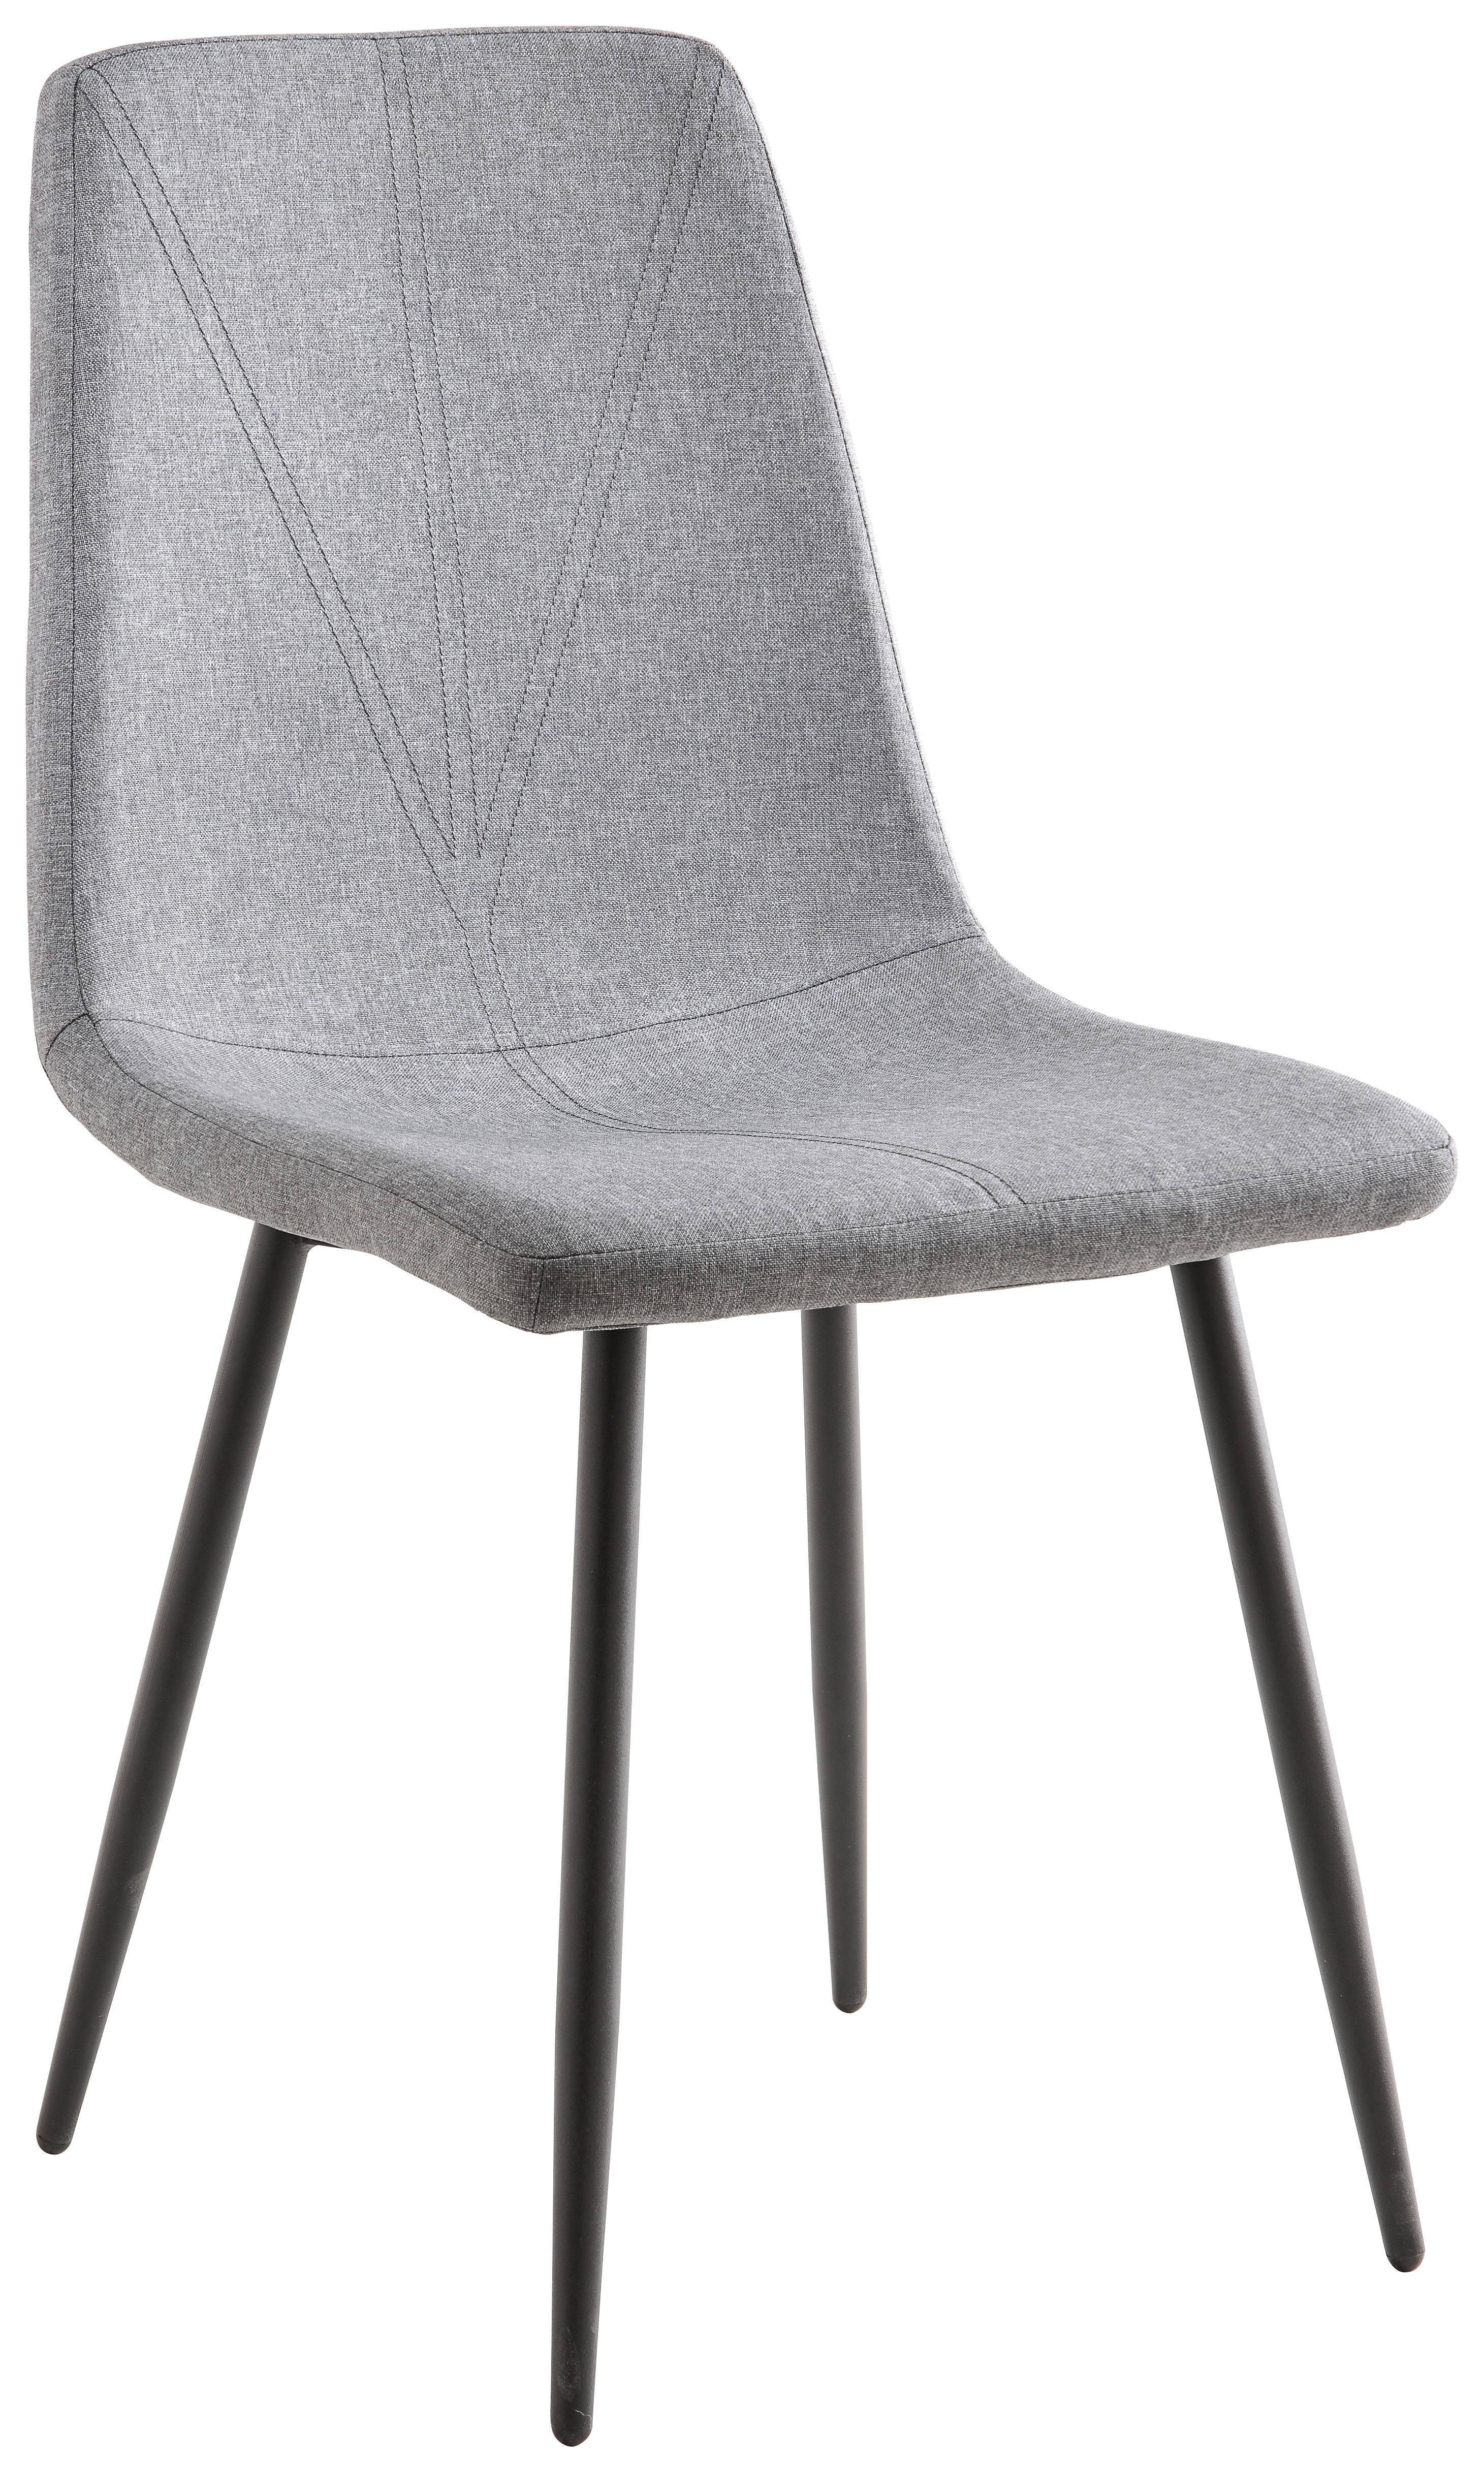 Čtyřnohá Židle Doro - šedá/černá, Konvenční, kov/dřevo (45/89,5/54cm)